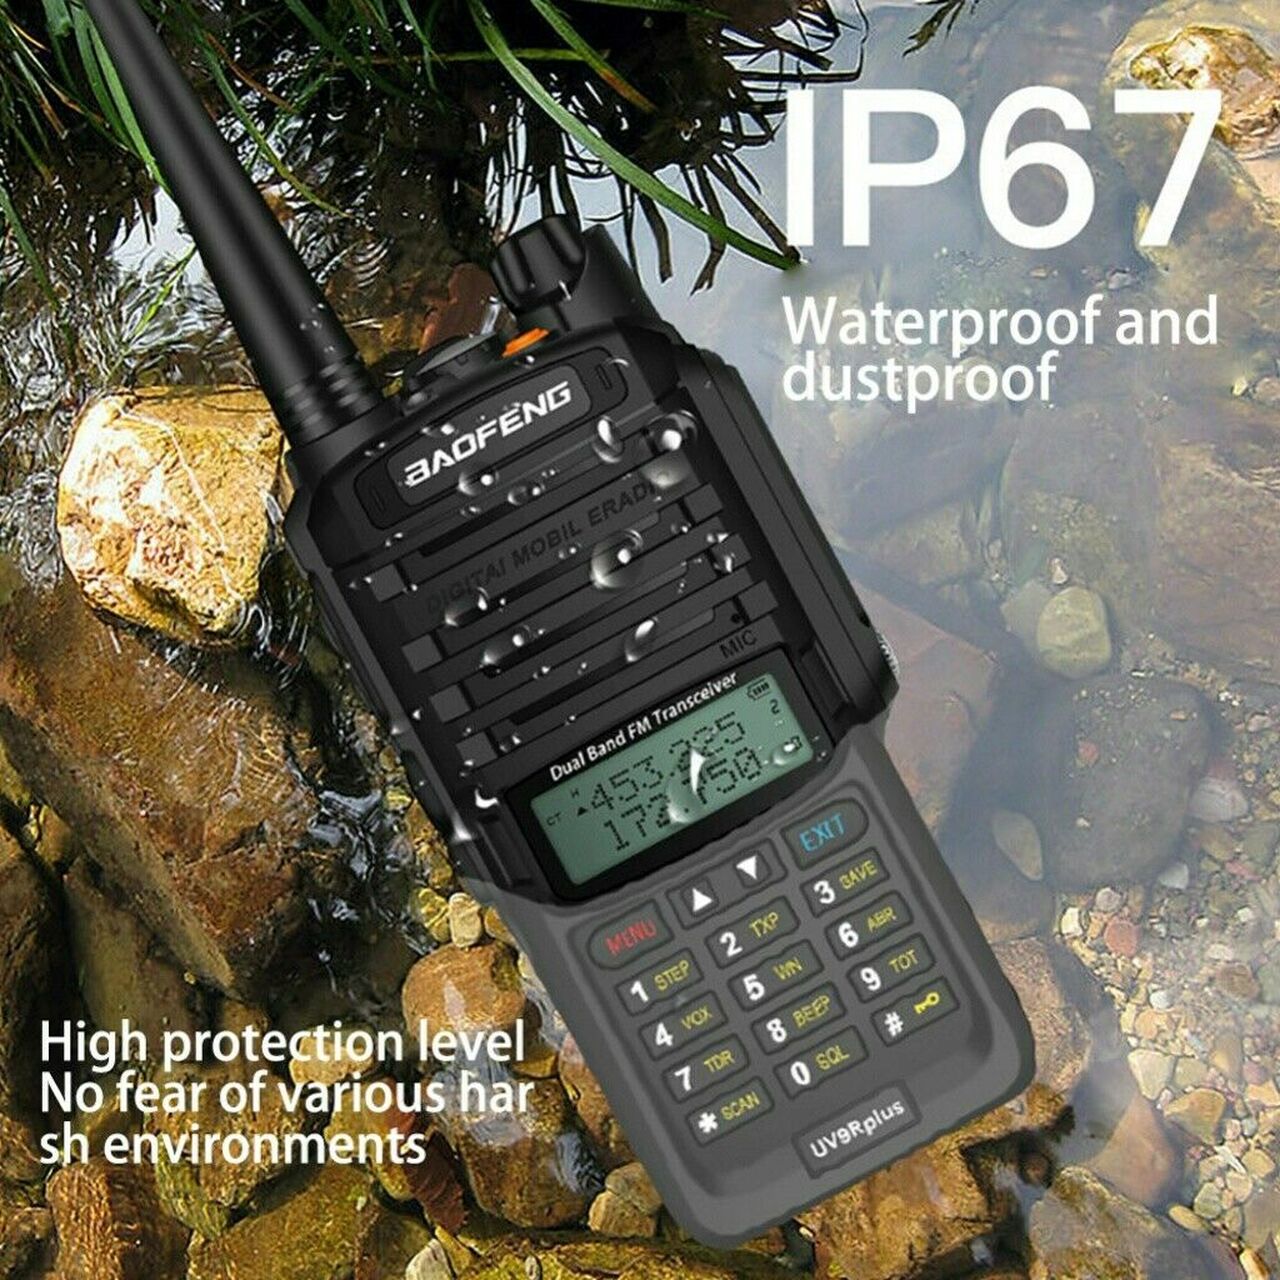 UV-9R Handheld Walkie Talkie 8W UHF VHF UV Dual Band IP67 Waterproof Two Way Radio - 3